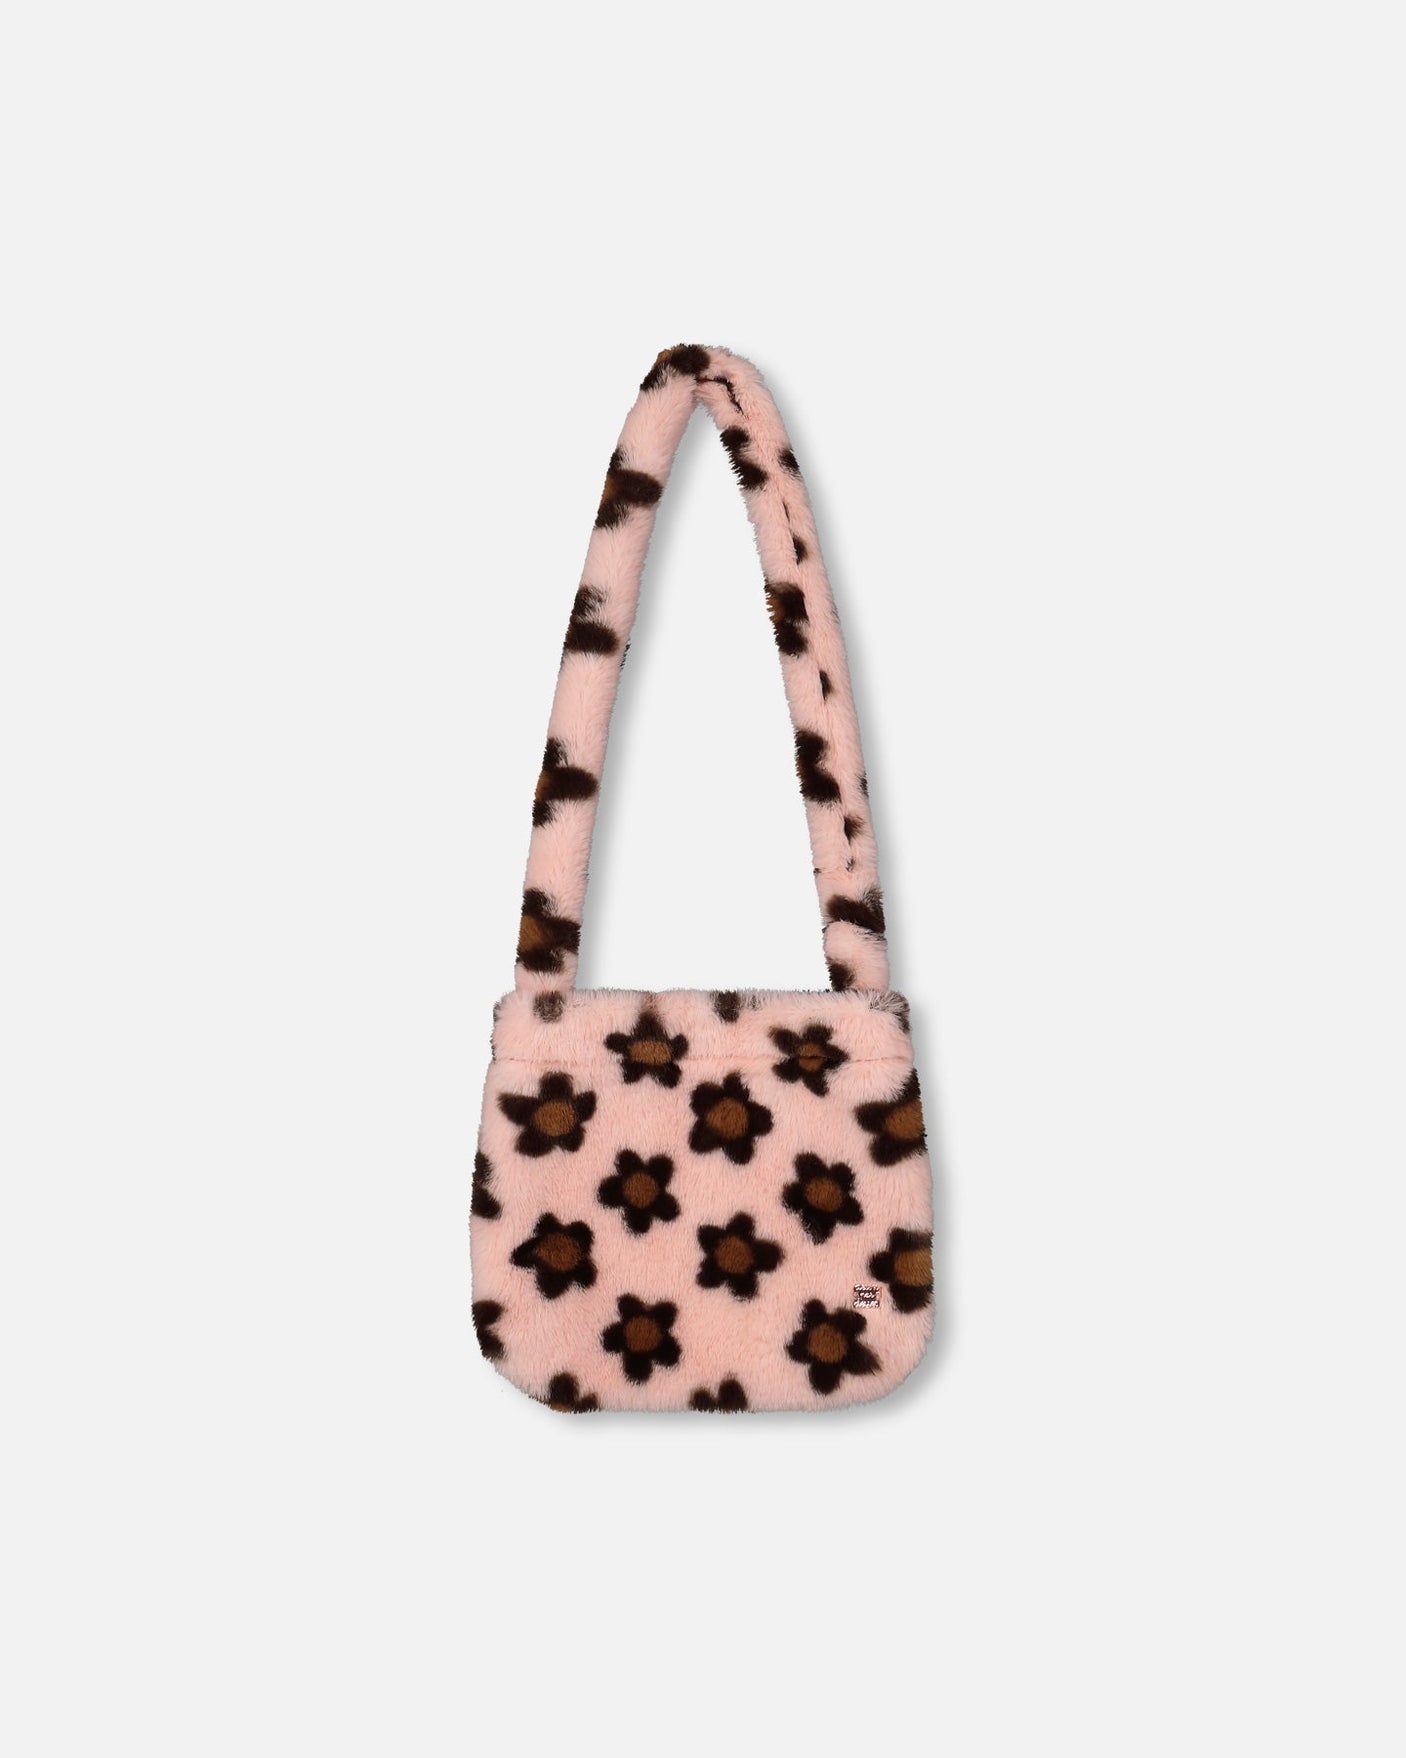 Faux Fur Shoulder Bag Pink Printed With Brown Flowers-0